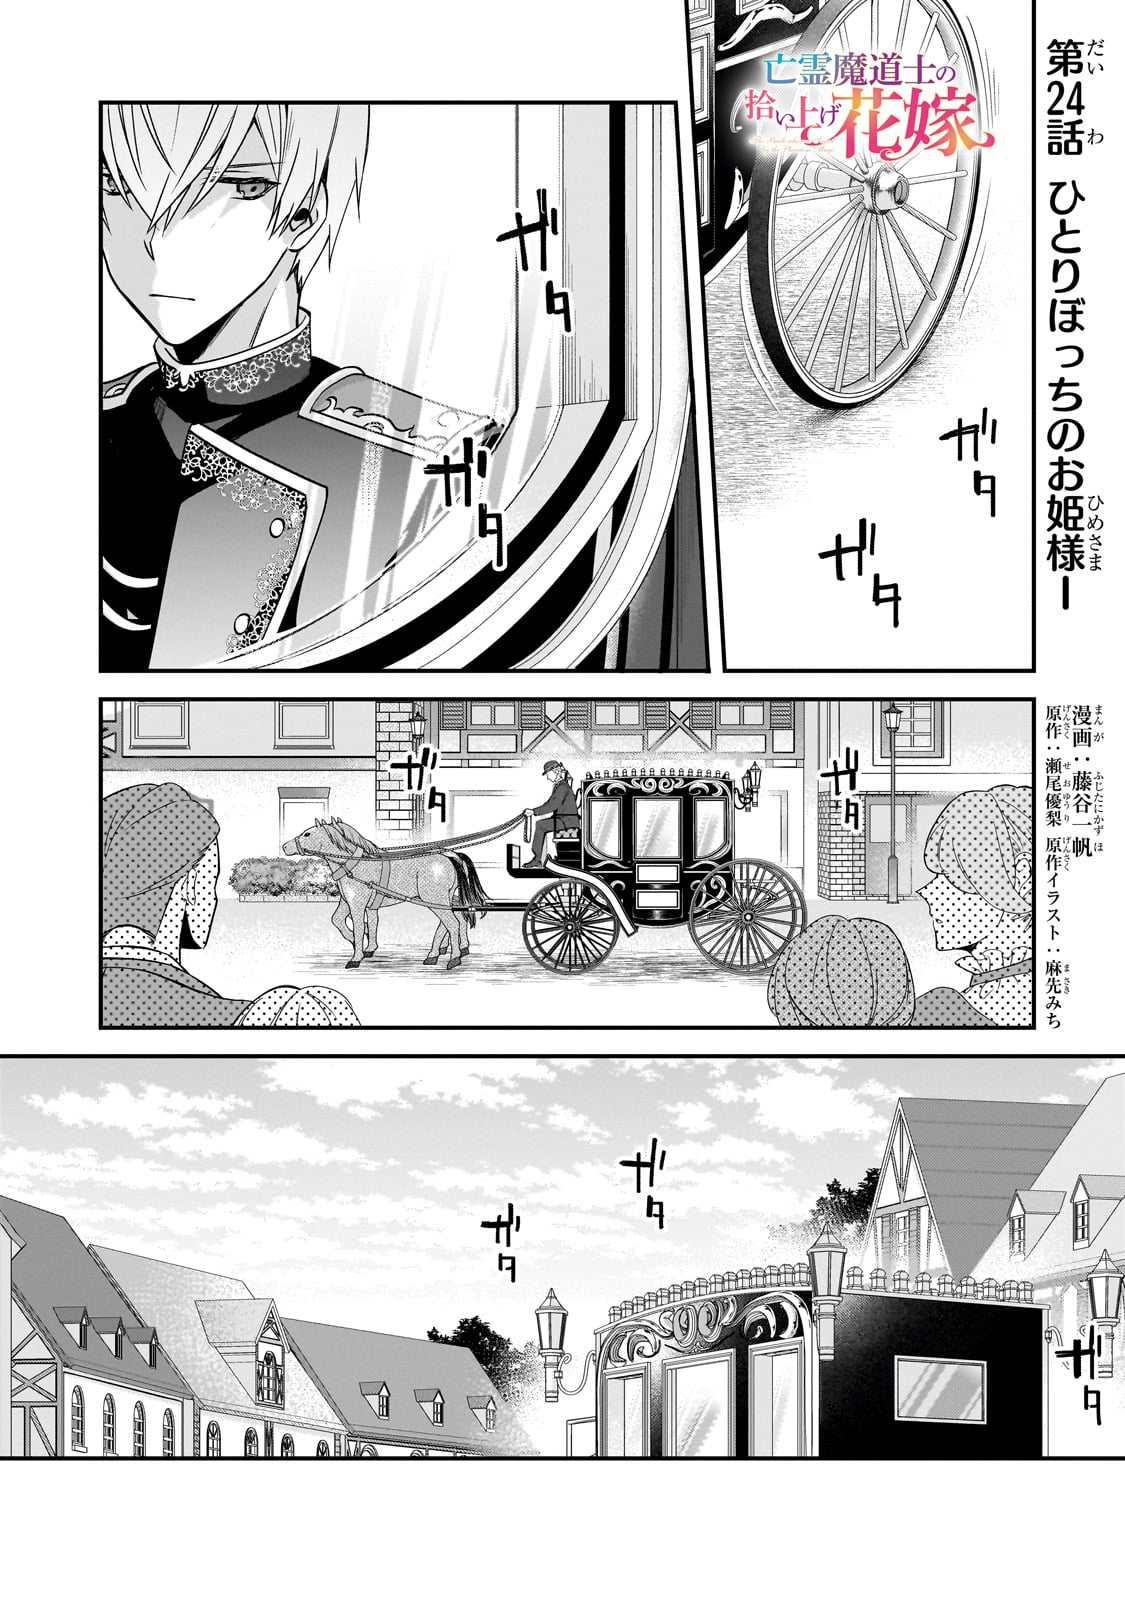 Bourei Madoushi no Hiroiage Hanayome - Chapter 24 - Page 1